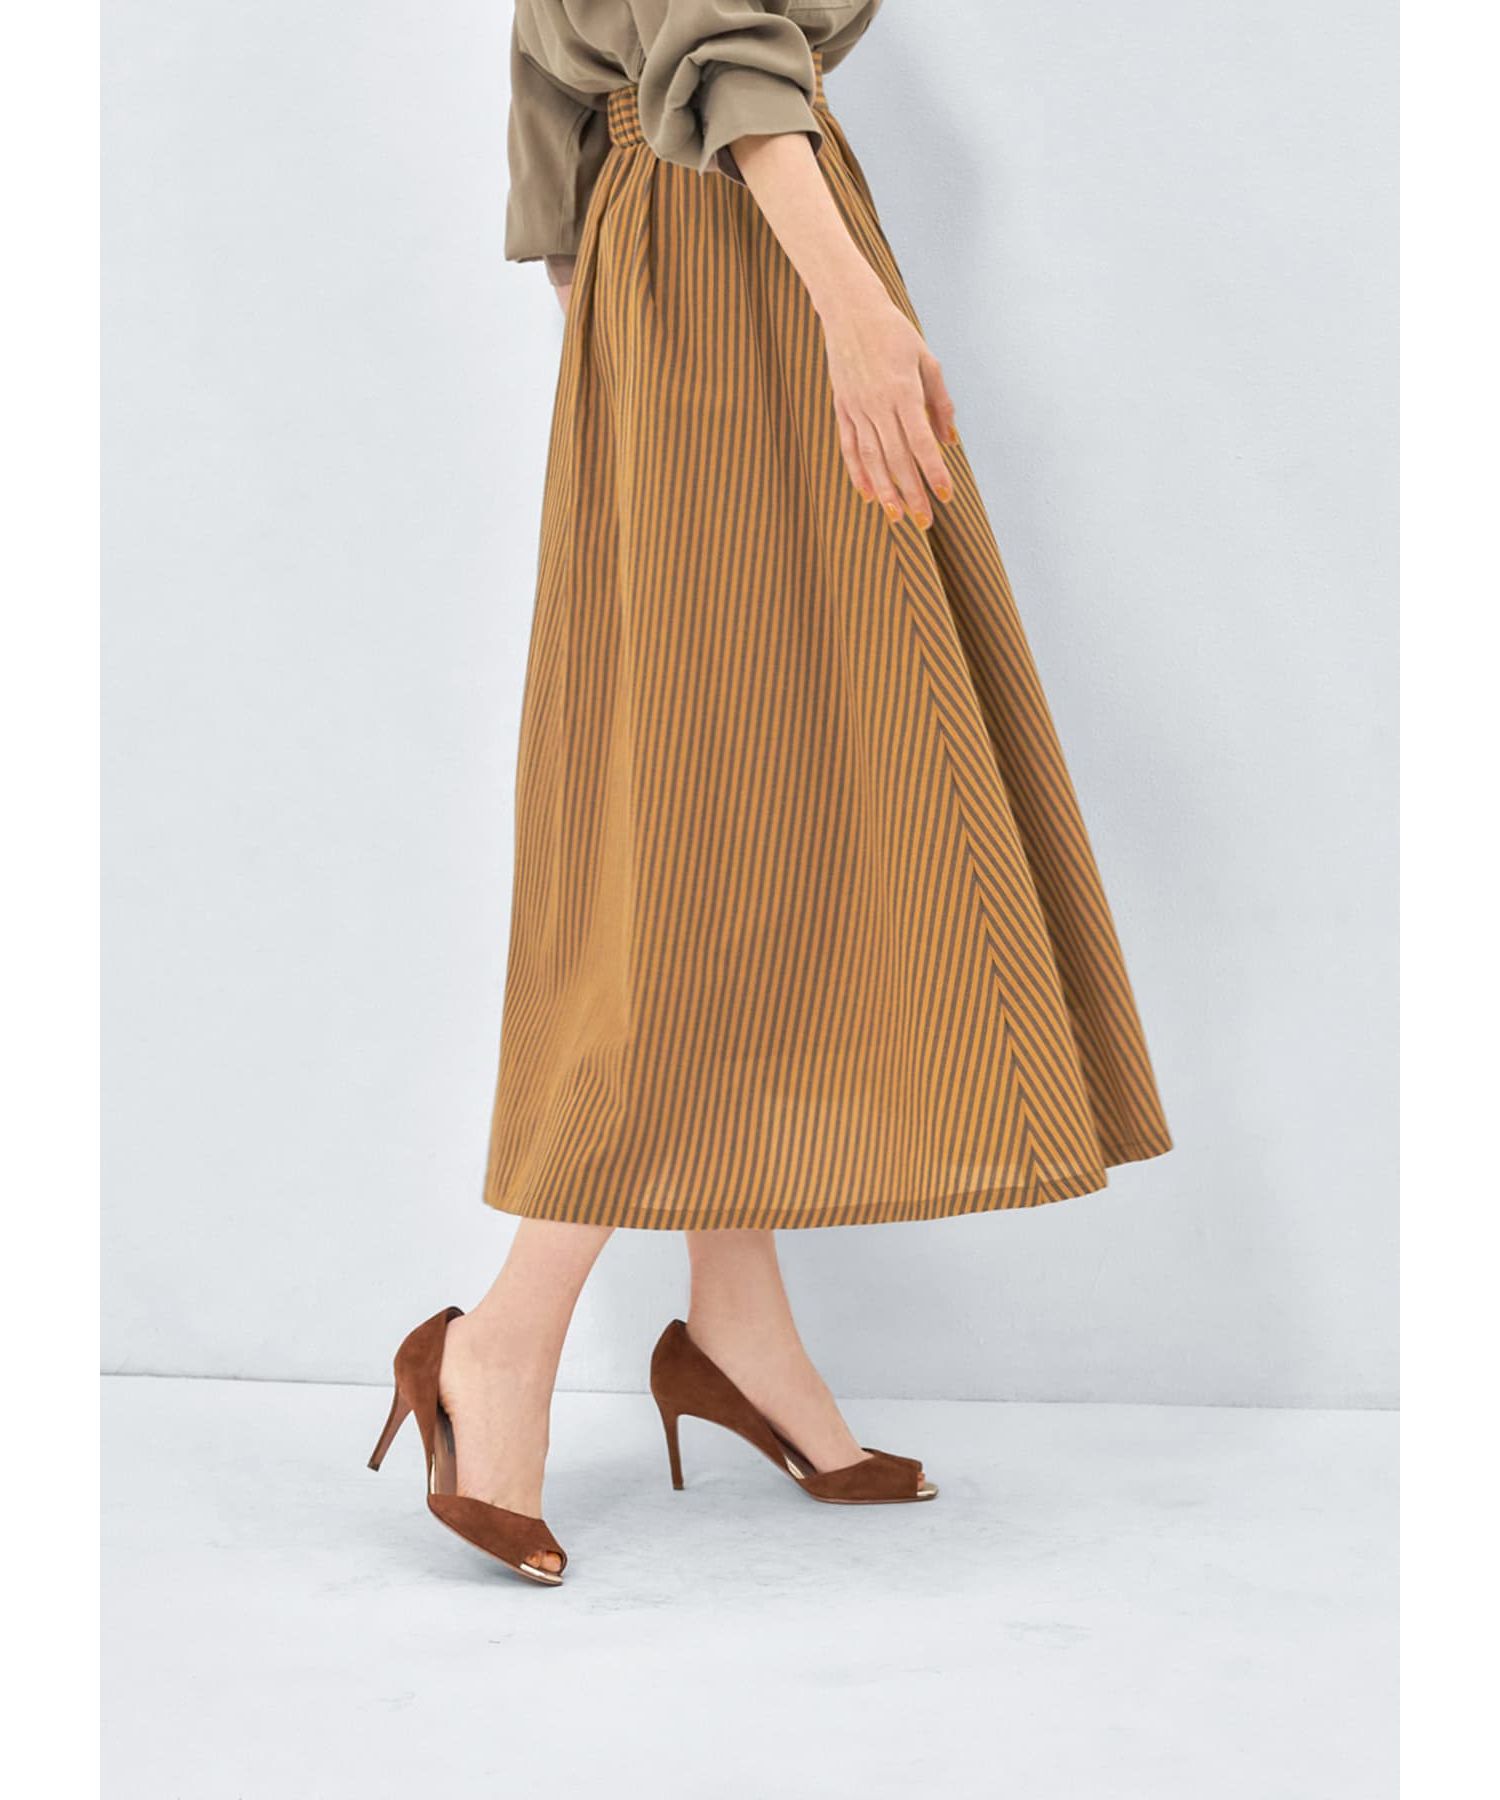 カラーナチュラルストライプ織りスカート|STYLE DELI(スタイルデリ)の